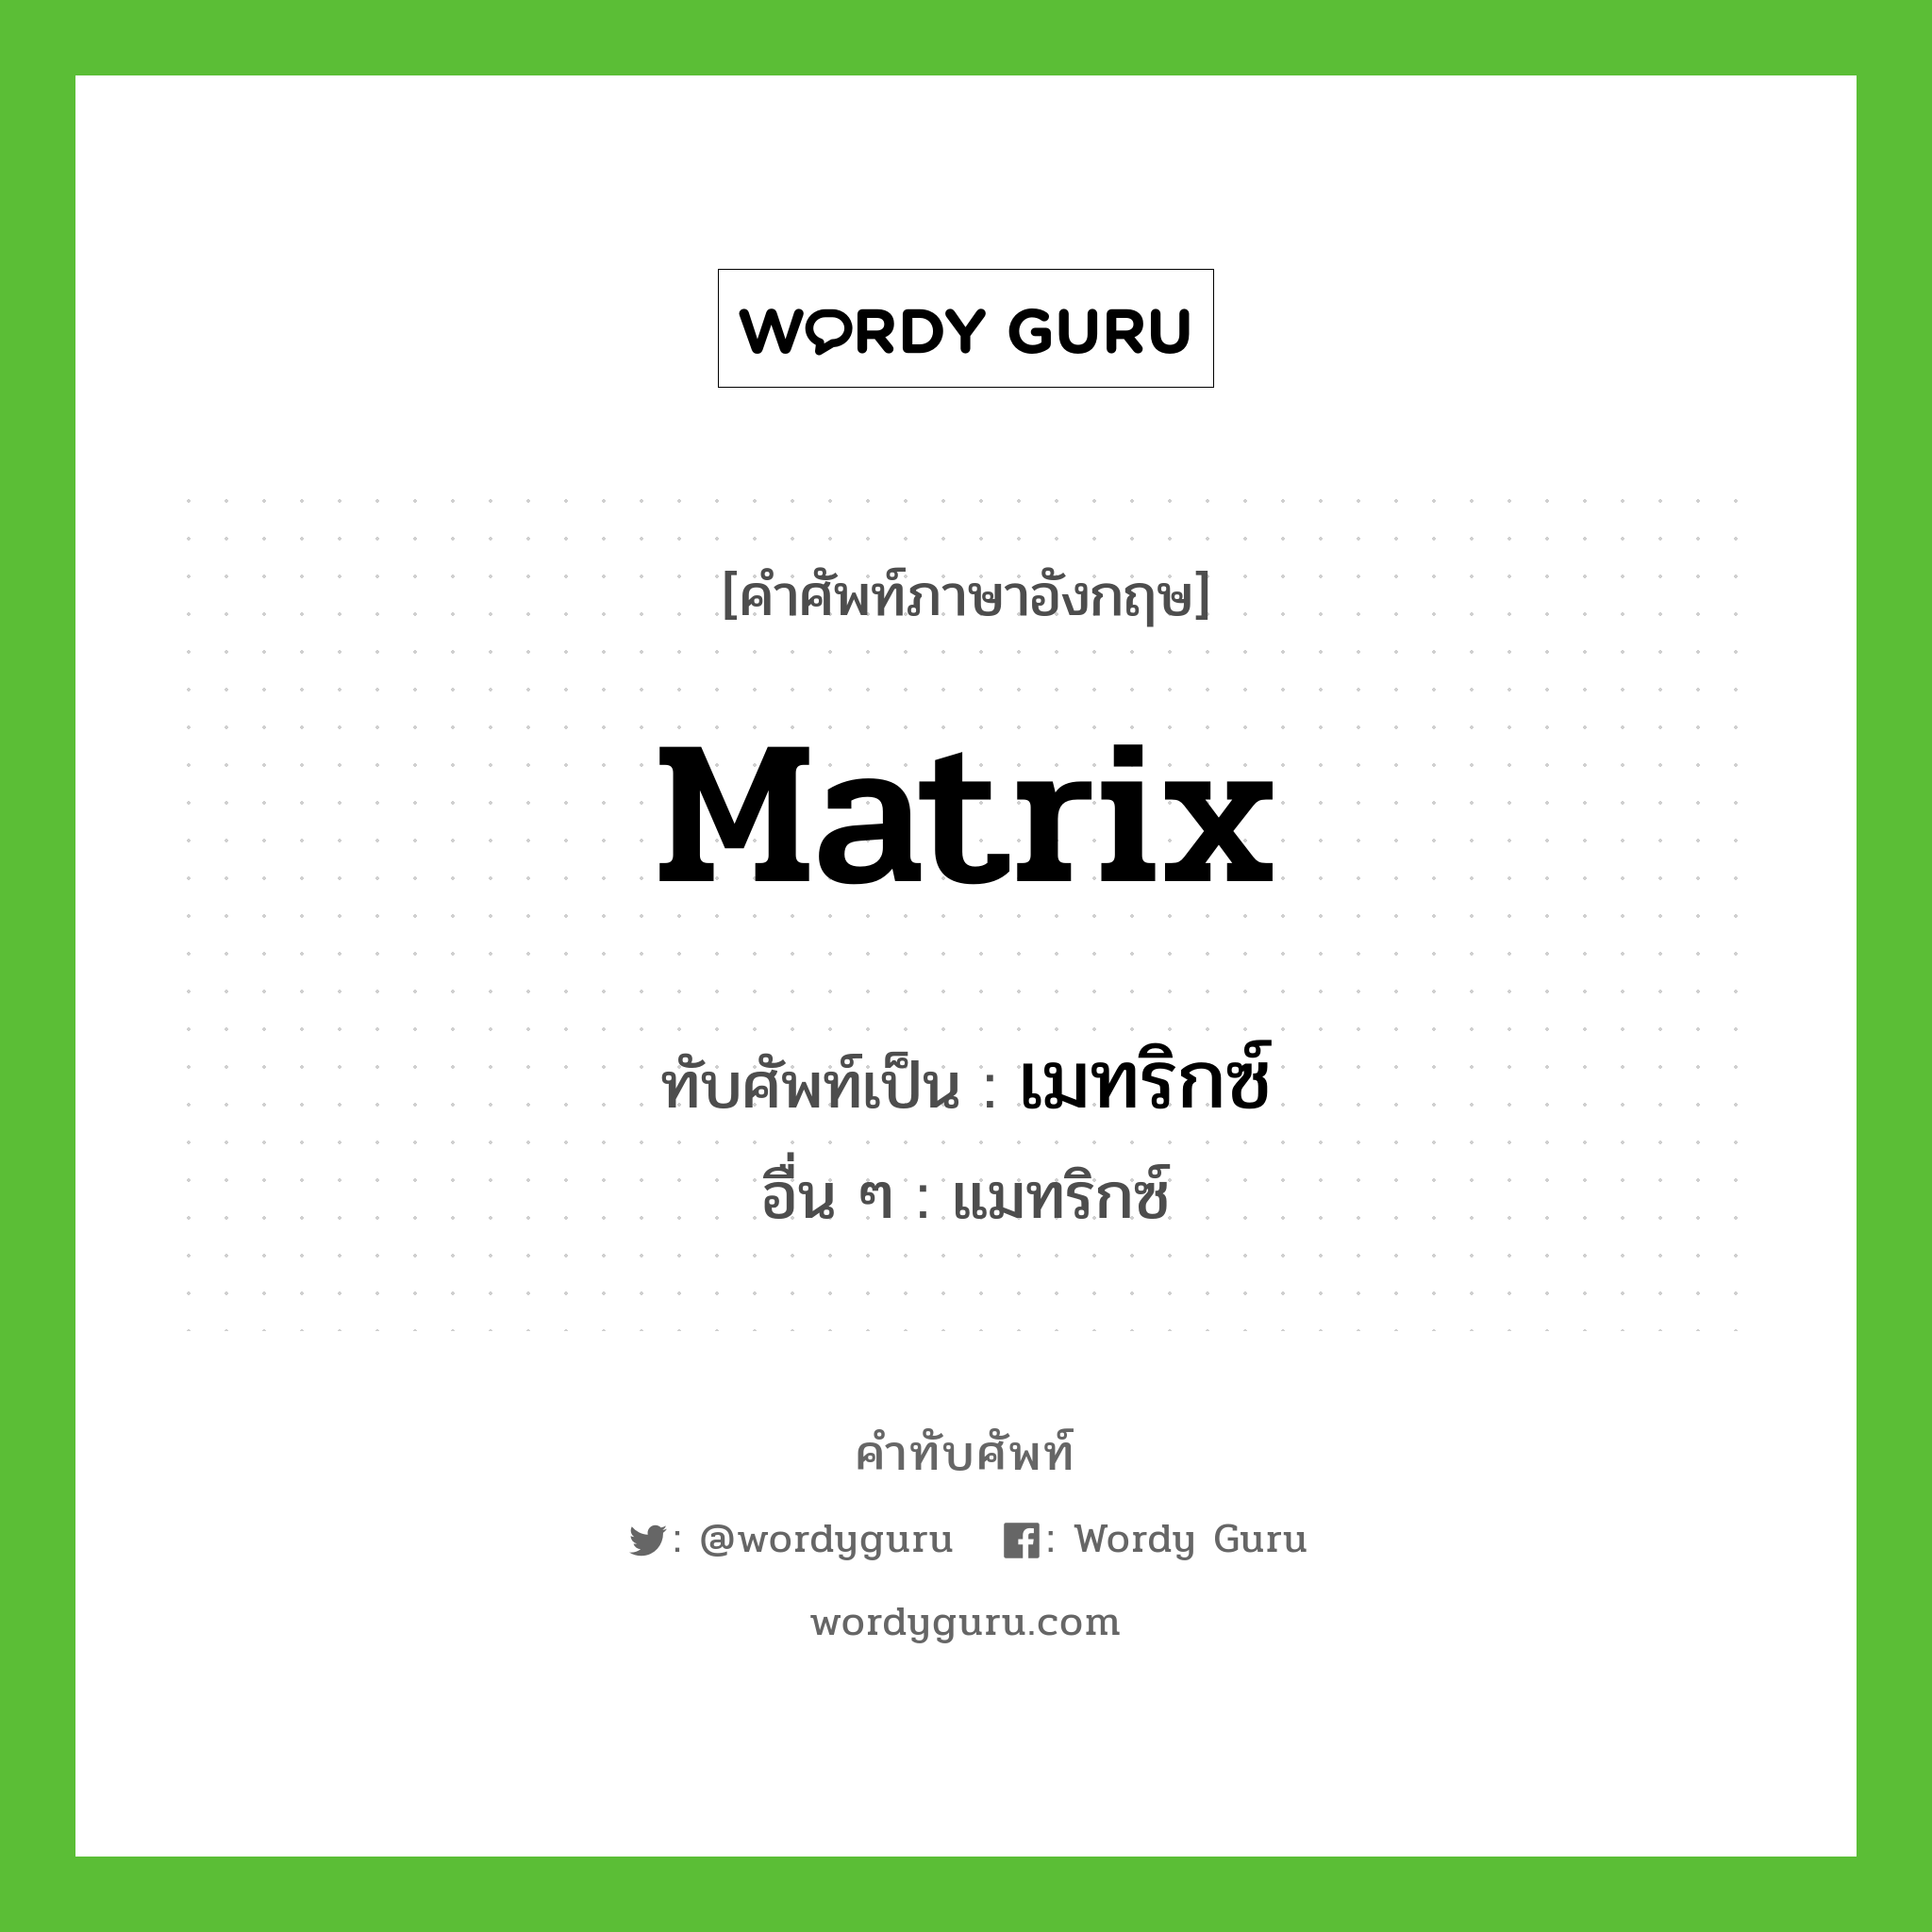 เมทริกซ์ เขียนอย่างไร?, คำศัพท์ภาษาอังกฤษ เมทริกซ์ ทับศัพท์เป็น matrix อื่น ๆ แมทริกซ์